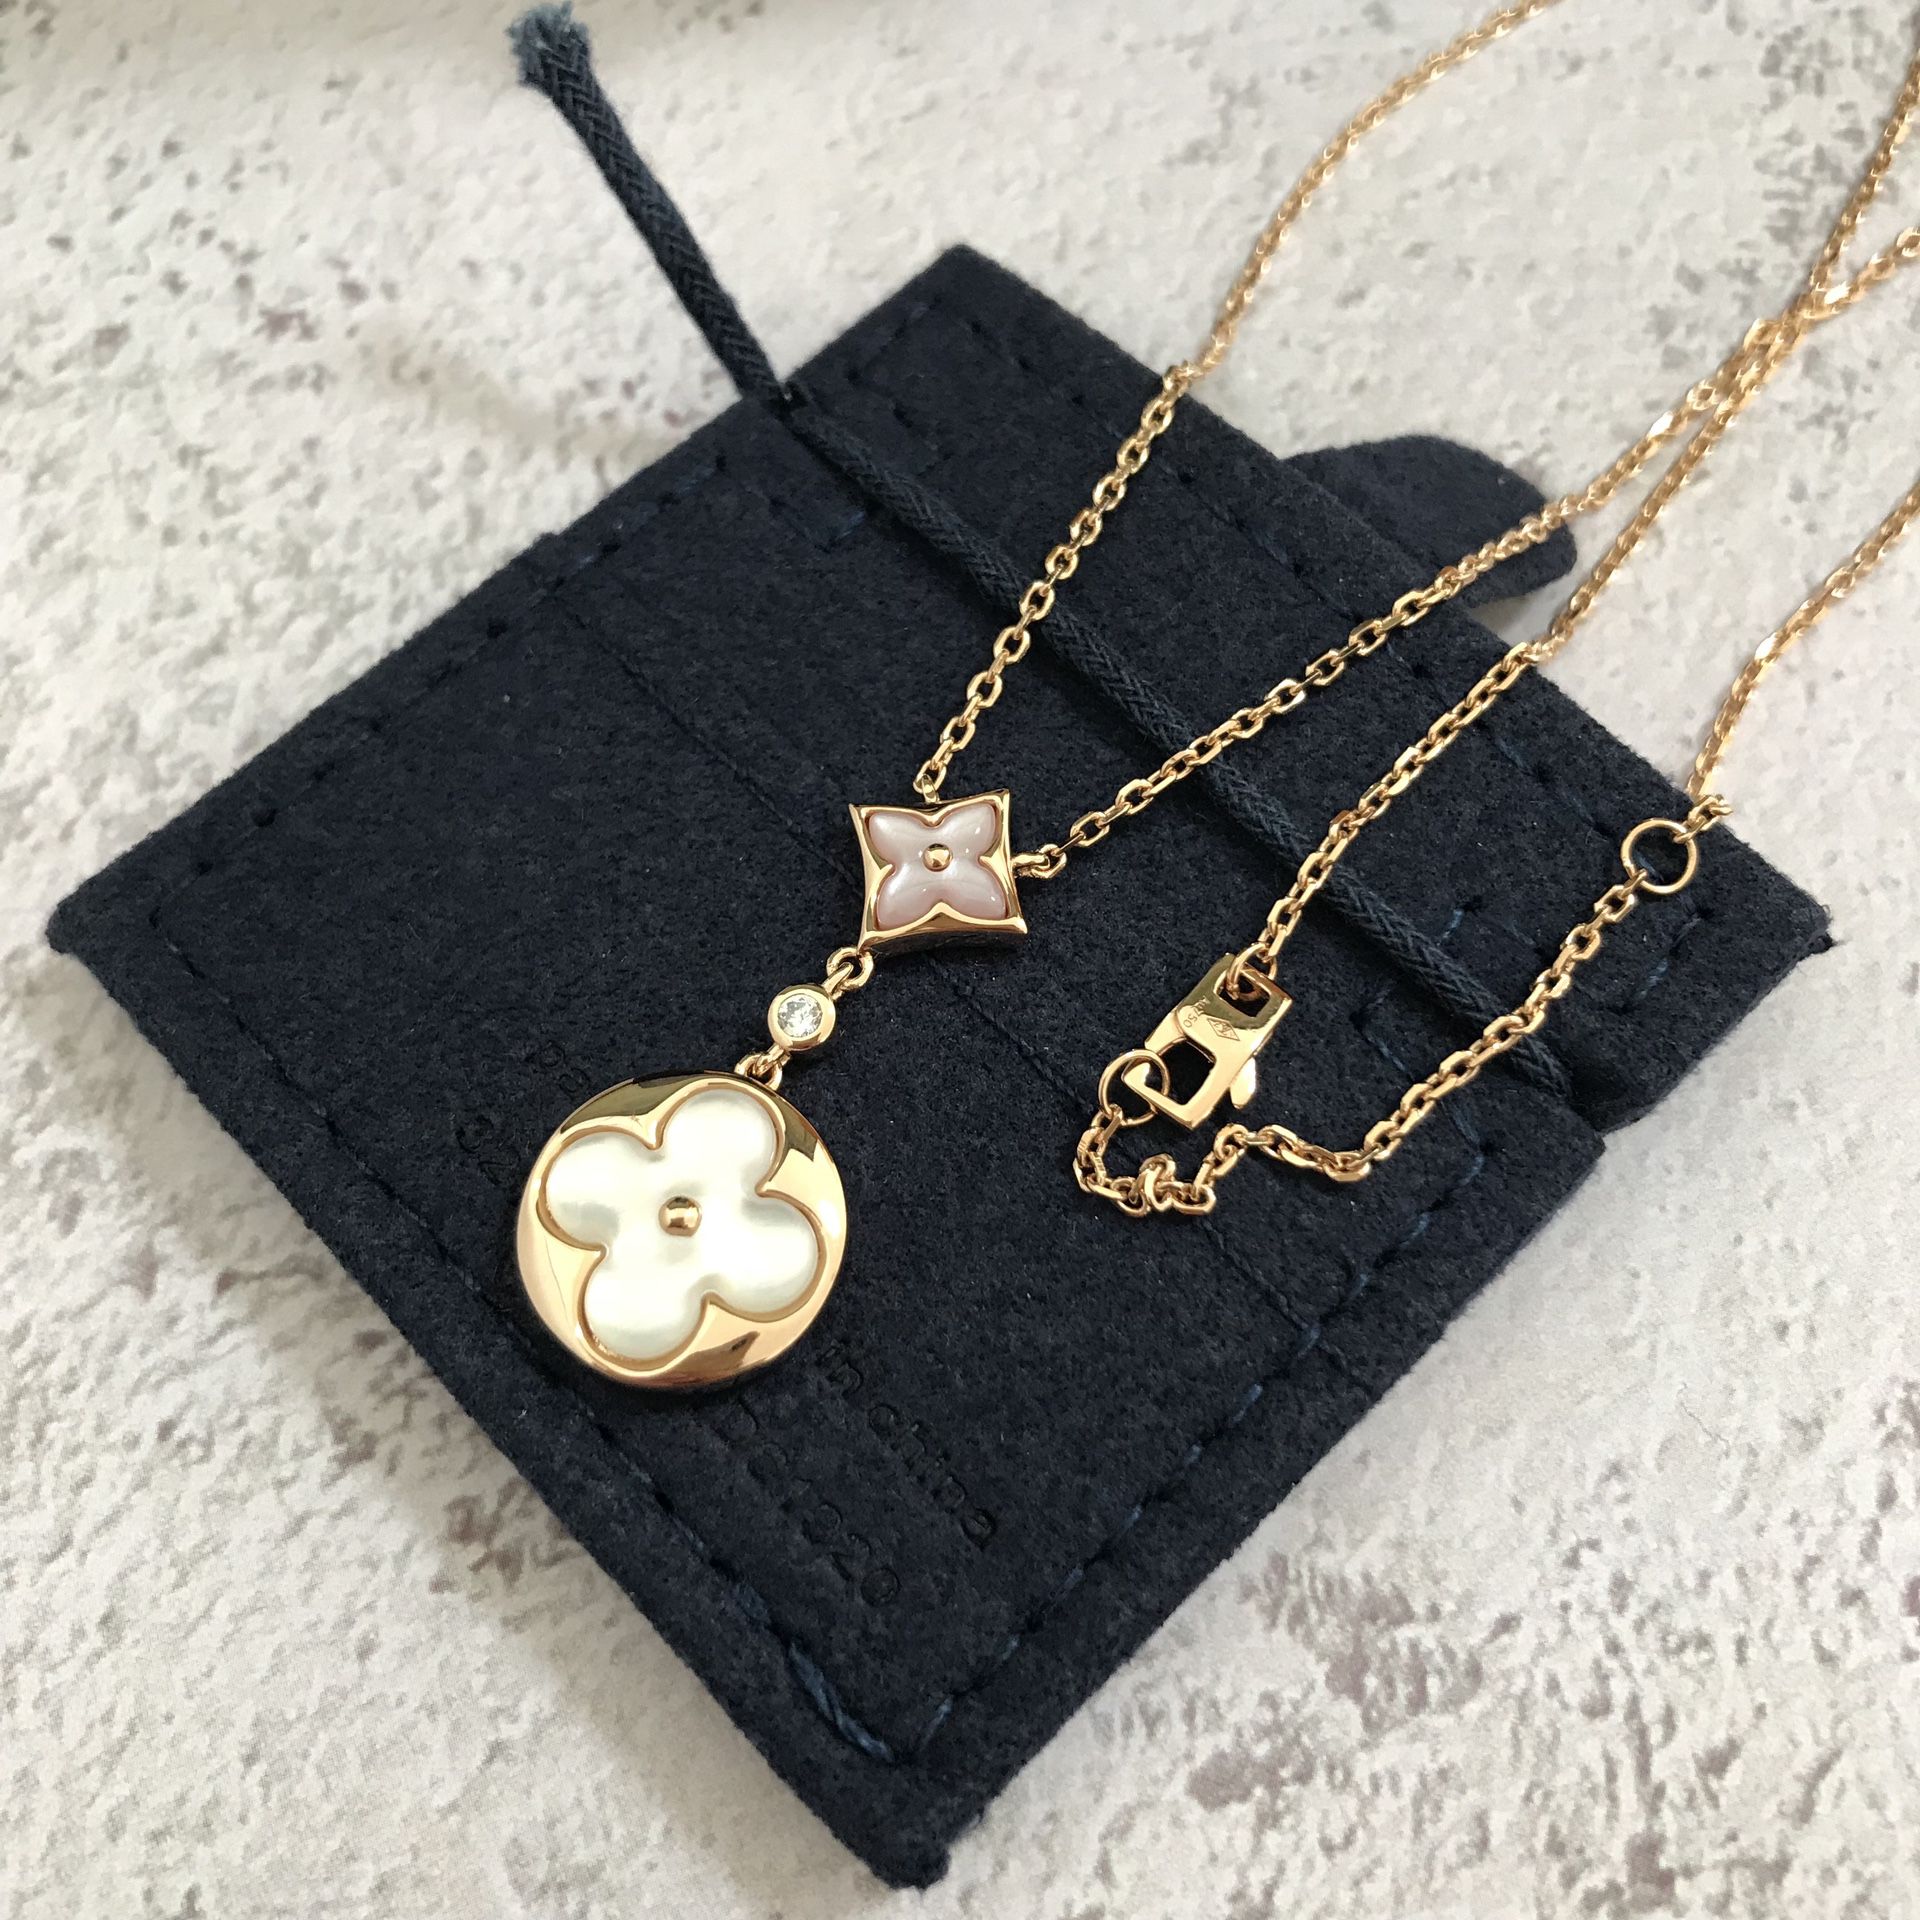 Louis Vuitton Necklace Classic Flower 18K Rose Gold Diamond